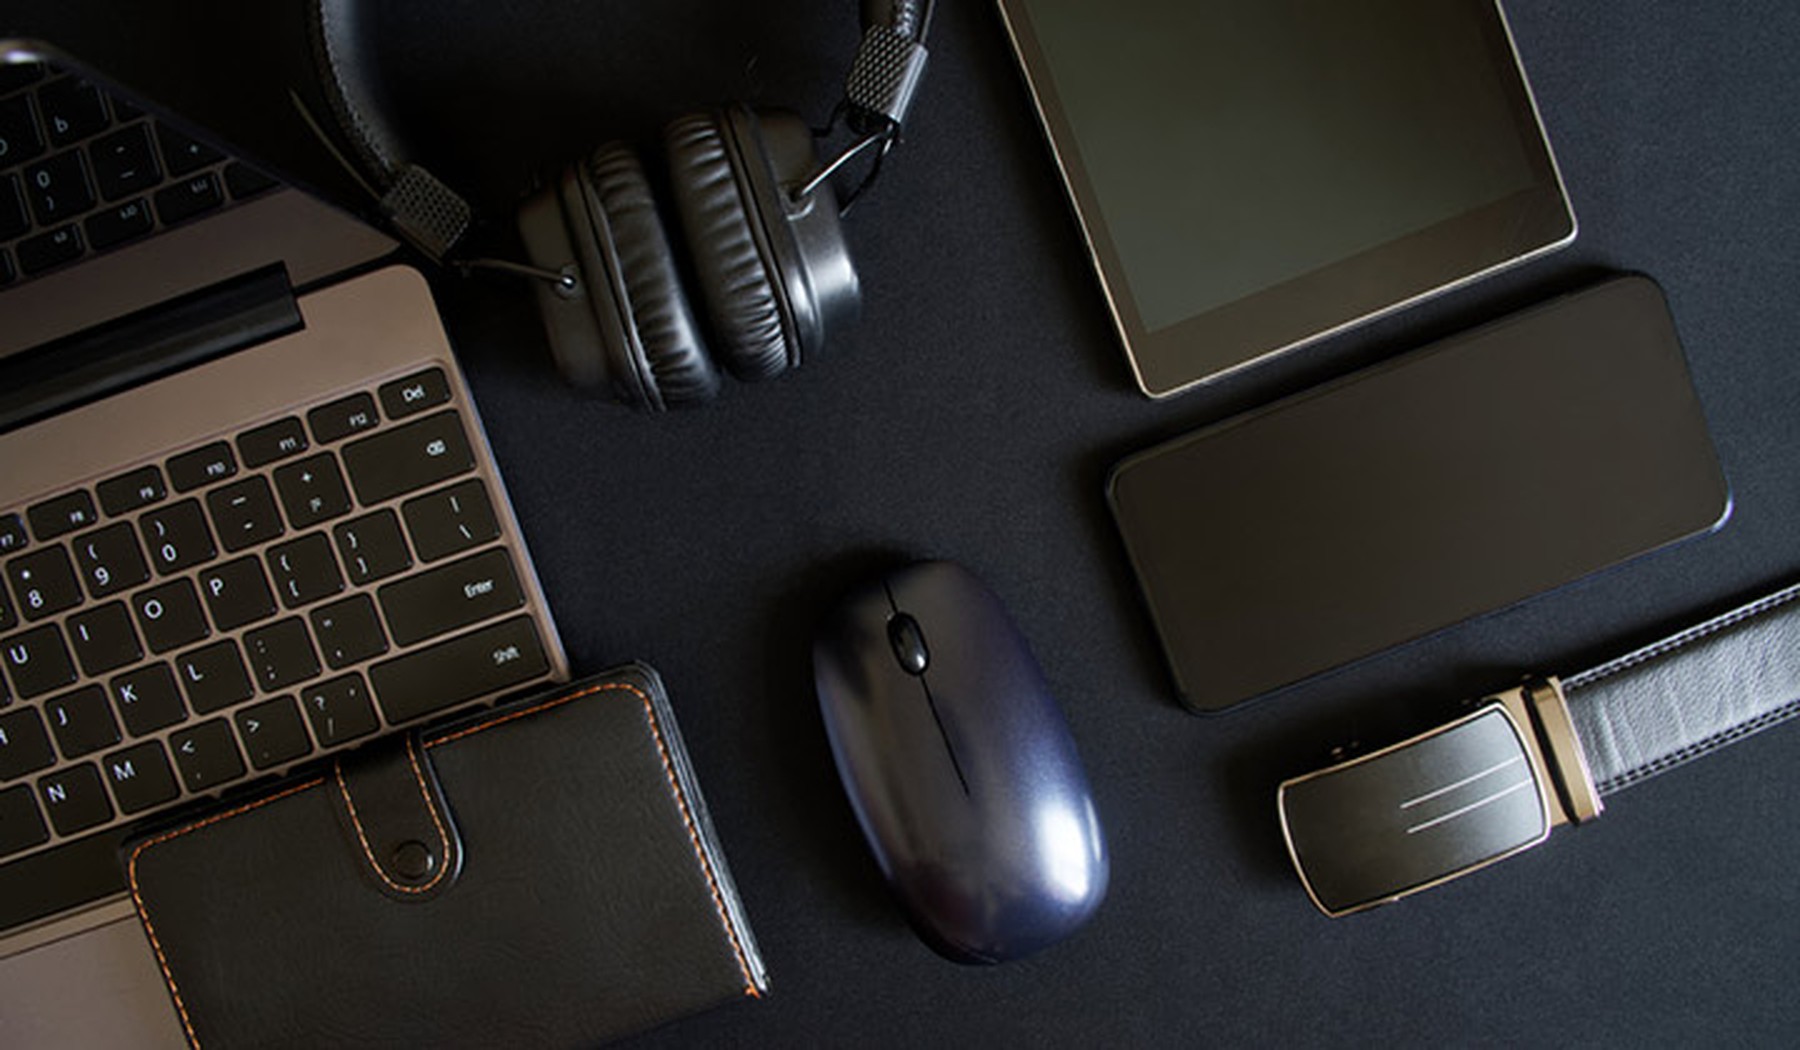 portátil, cartera negra de cuero, auriculares negros, ratón negro, smartphone, smartwatch y tablet